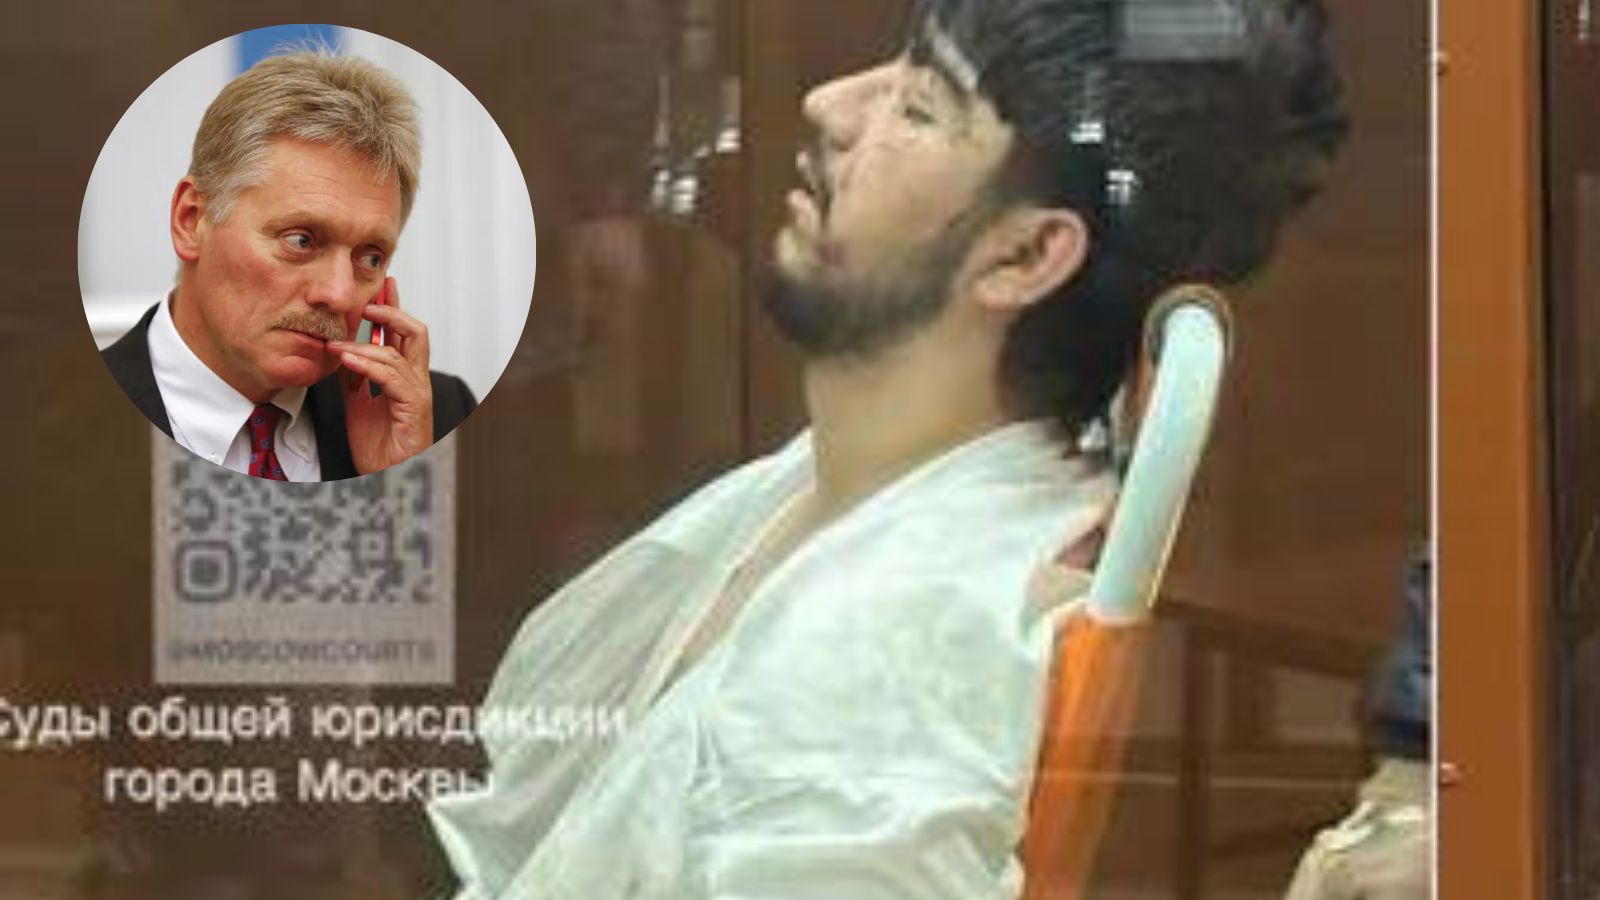 Zamach pod Moskwą. Pieskow krótko o śladach tortur na ciałach terrorystów